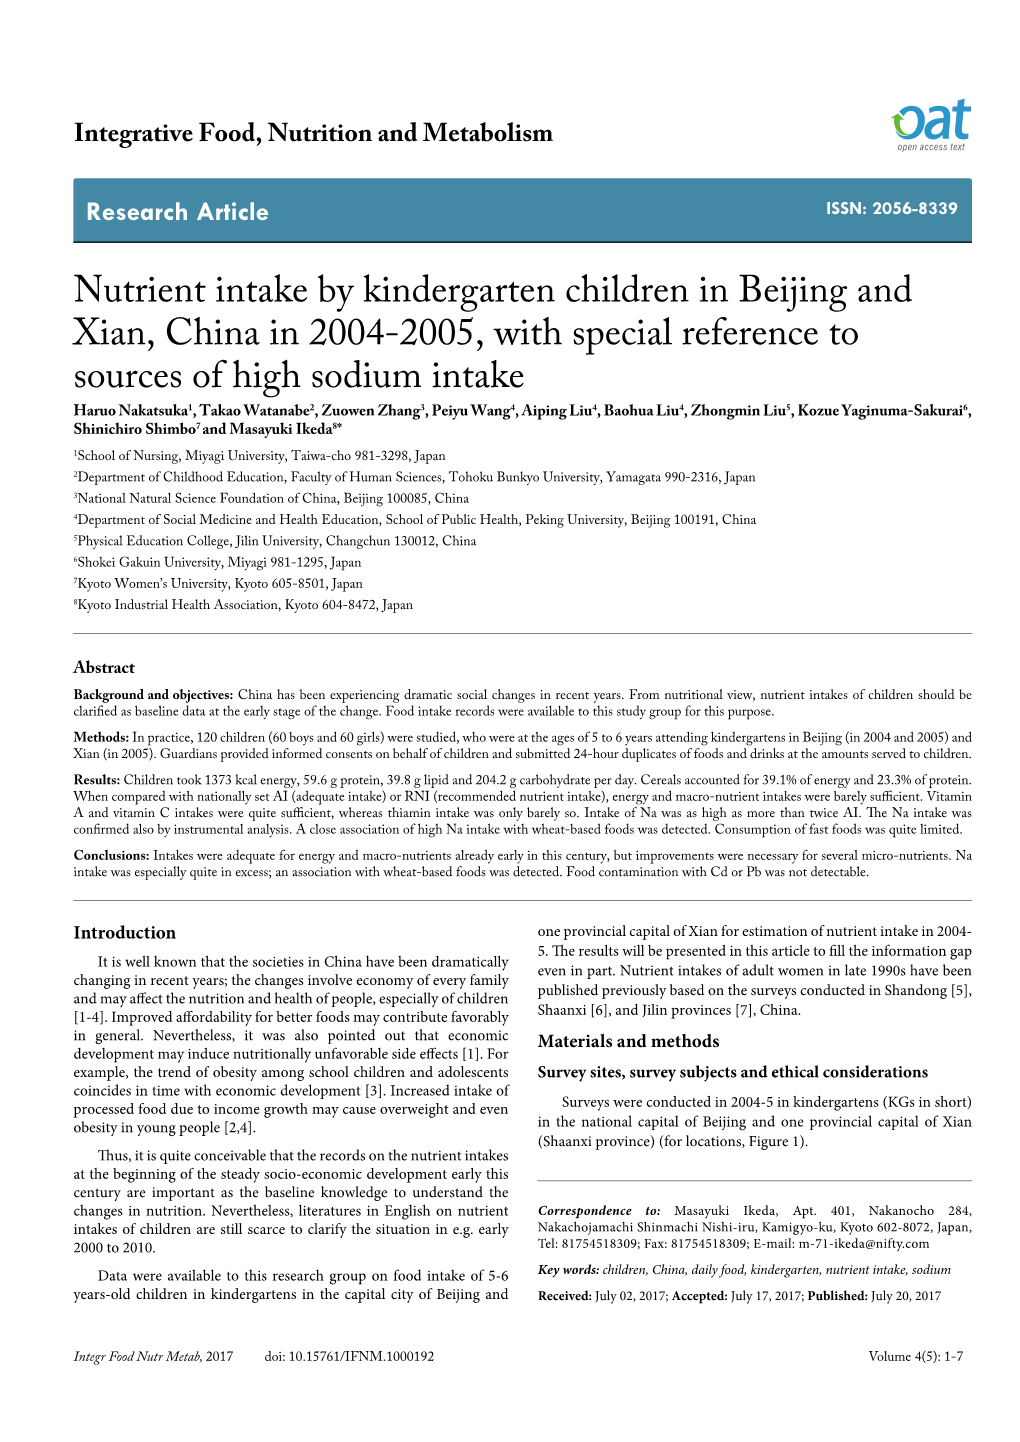 Nutrient Intake by Kindergarten Children in Beijing and Xian, China